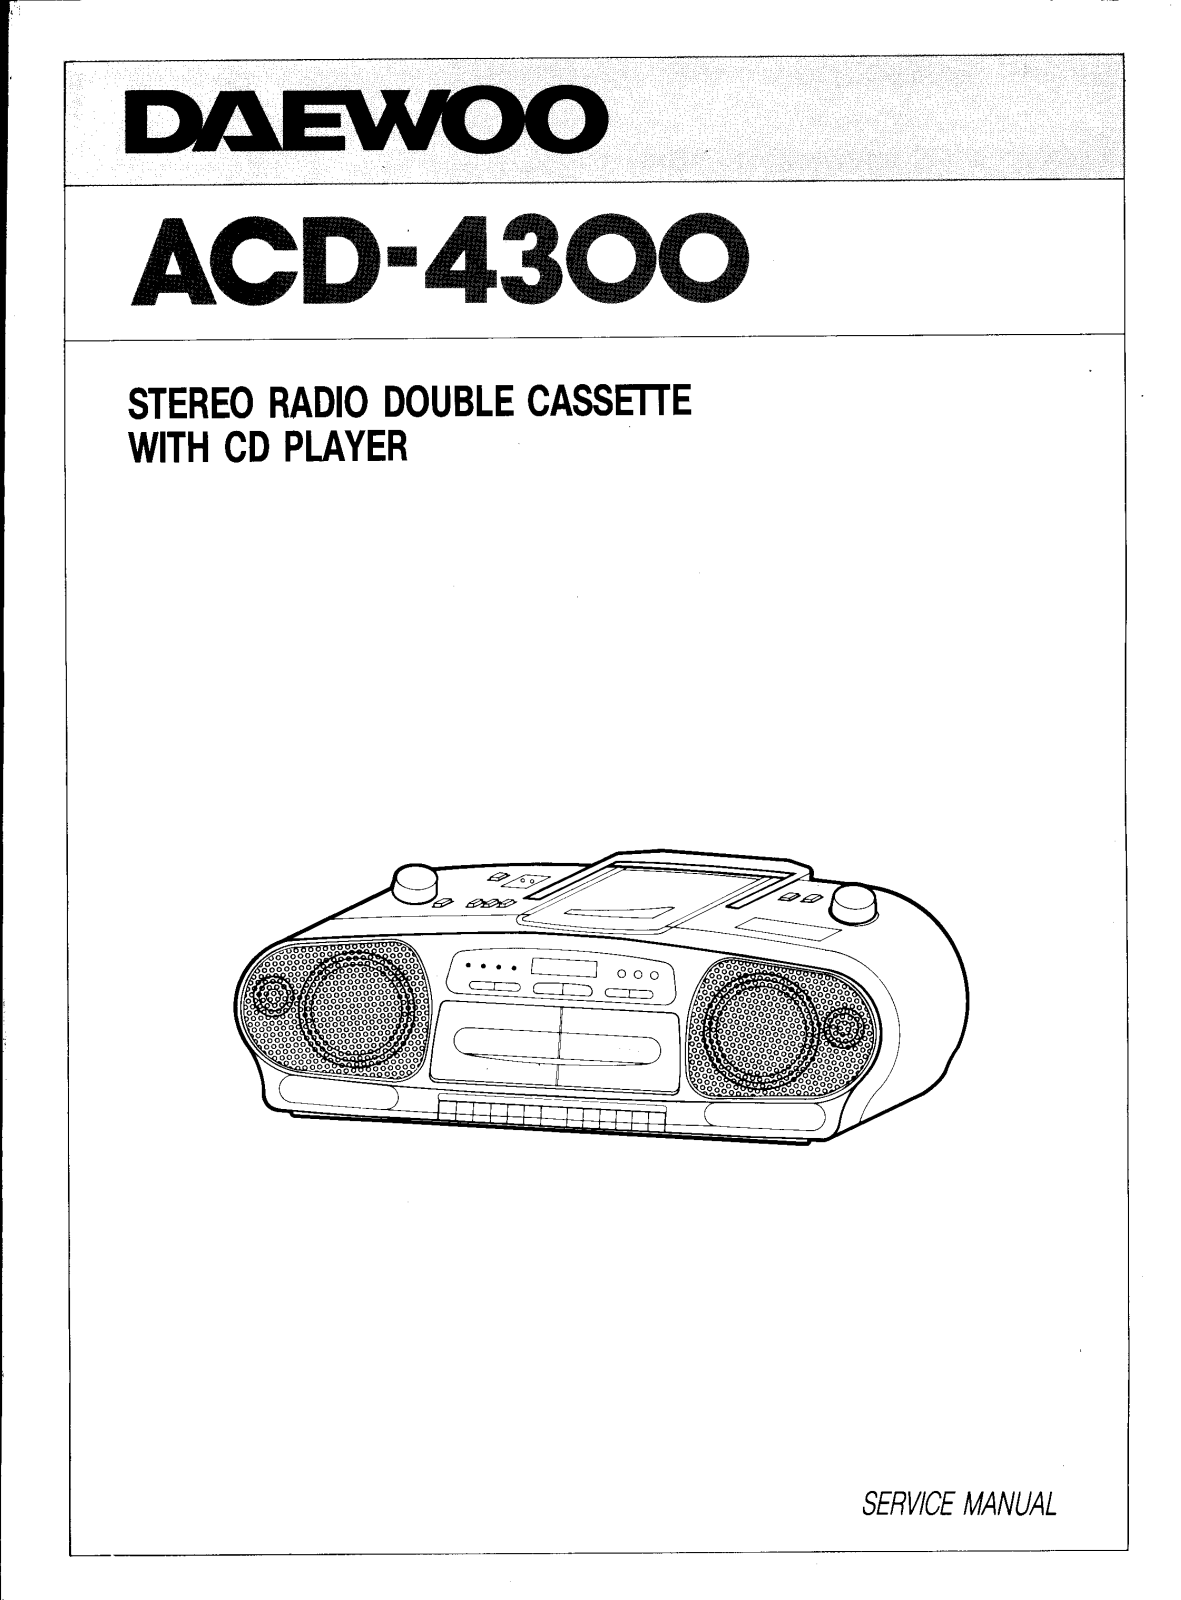 Daewoo ACD-4300 User Manual